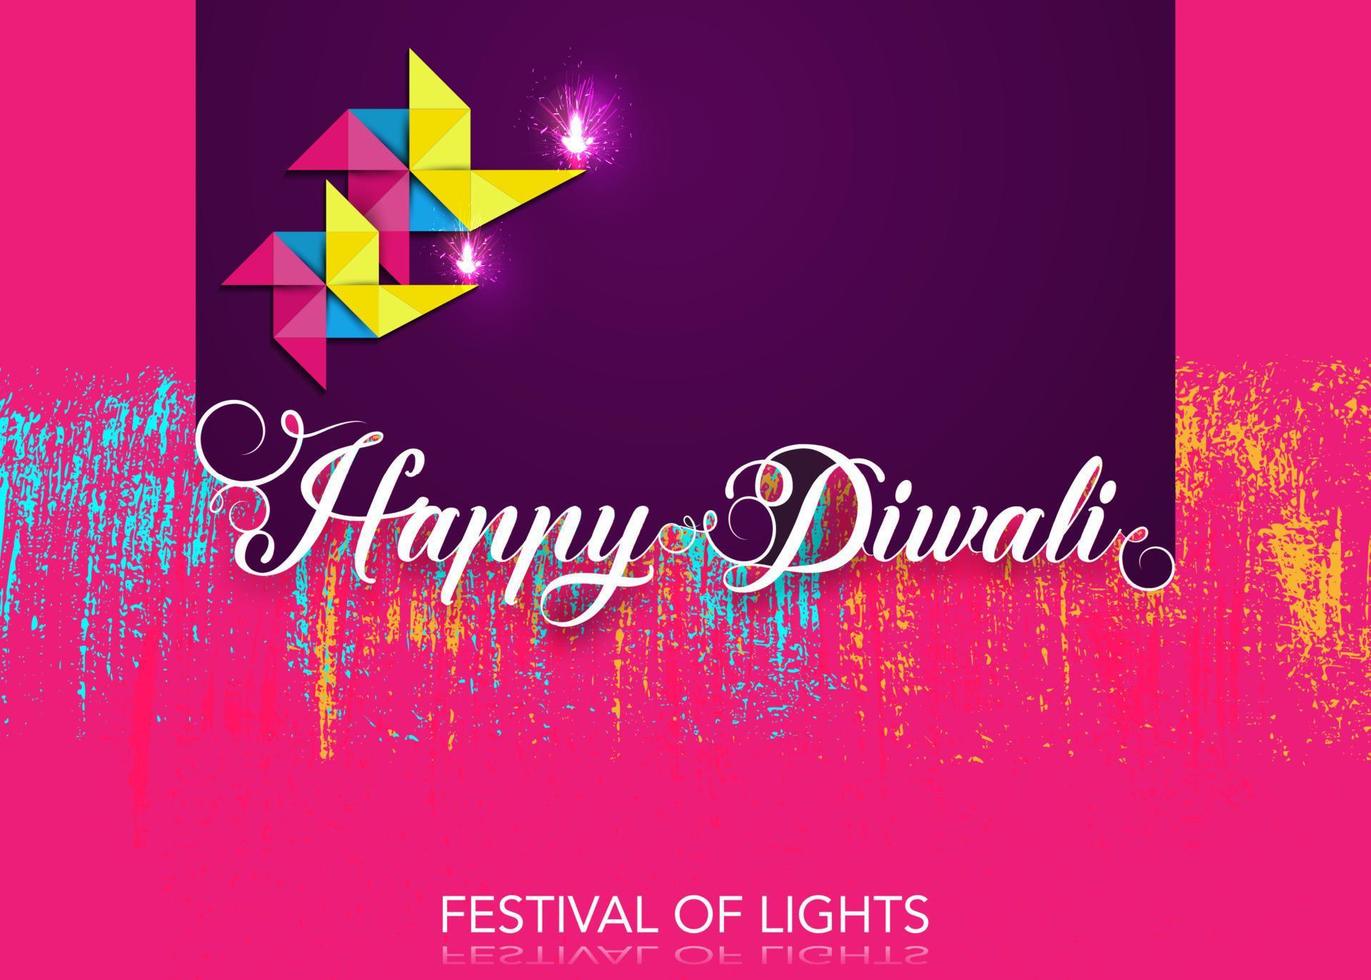 Feliz festival de diwali de celebración de luces plantilla colorida en papel de origami diseño gráfico de lámparas de aceite diya indias, diseño plano moderno. estilo de arte de banner vectorial, fondo de color degradado vector